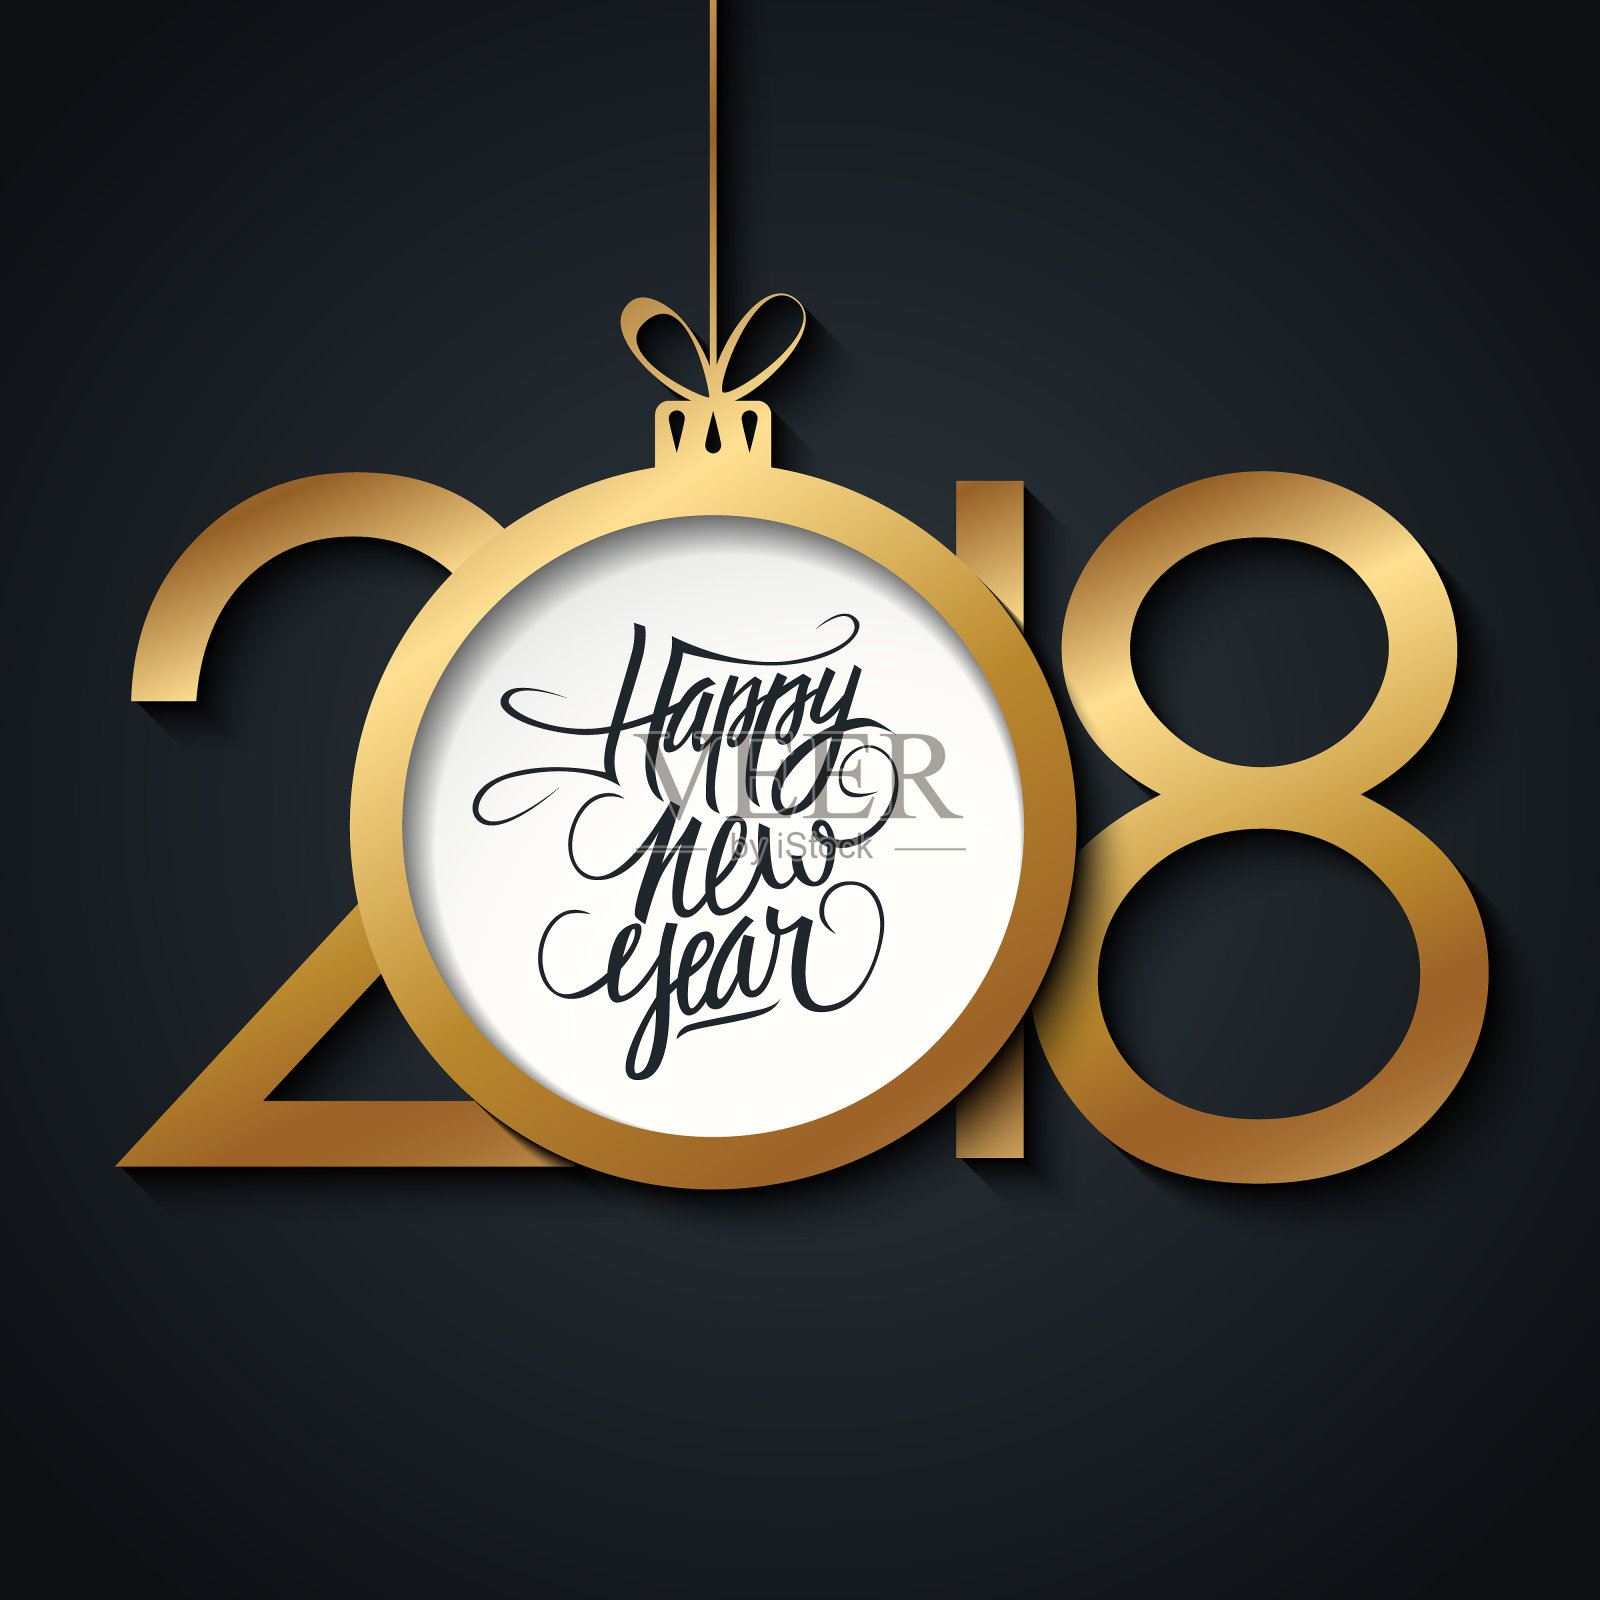 2018年新年贺卡，手写节日问候和金色圣诞球。手绘字体。设计模板素材